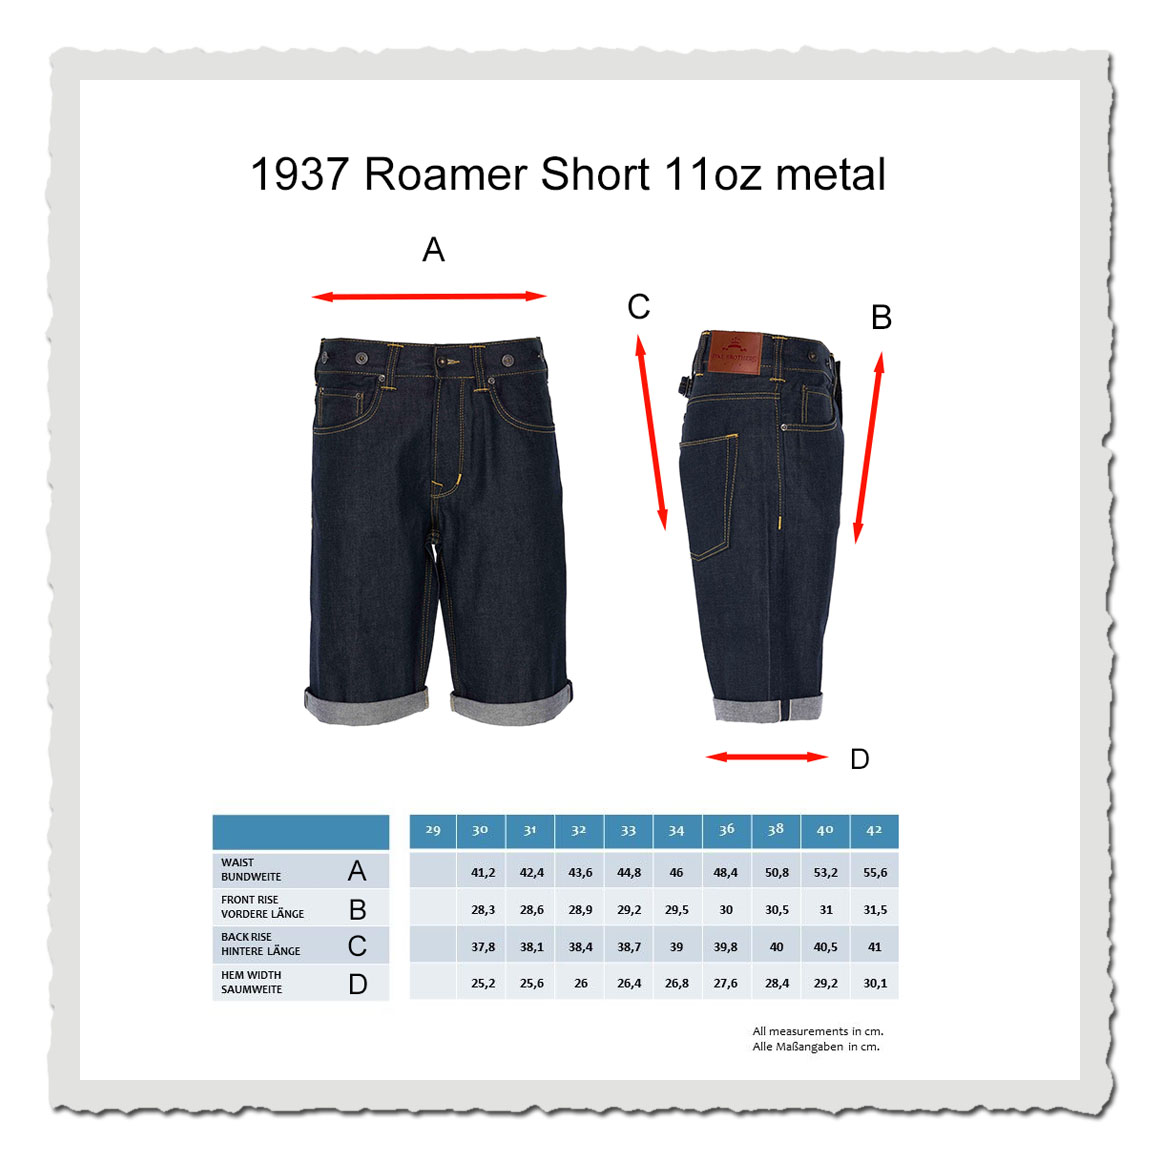 1937 Roamer Pant Short 11oz metal